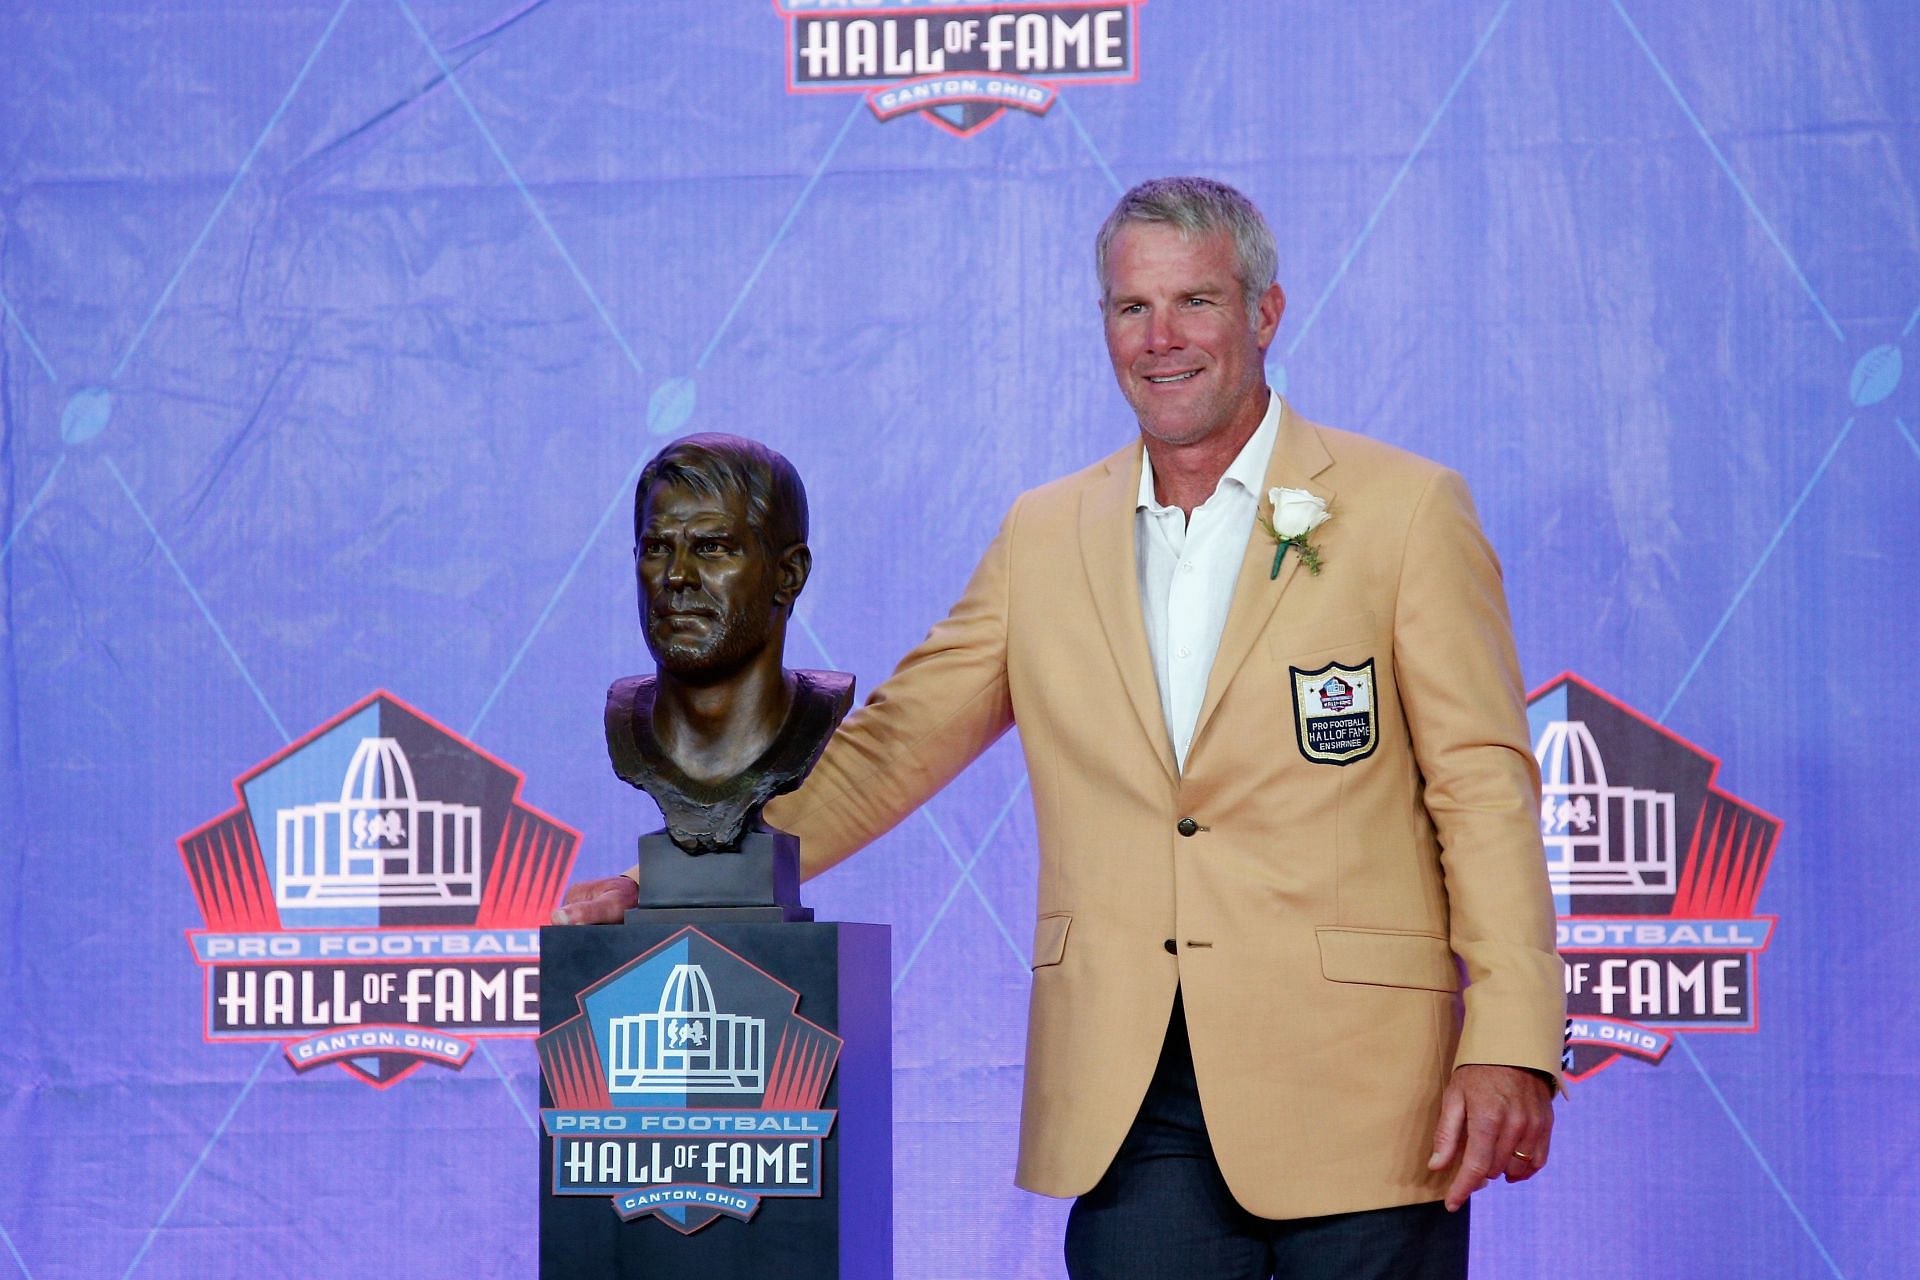 Hall of Fame quarterback Brett Favre